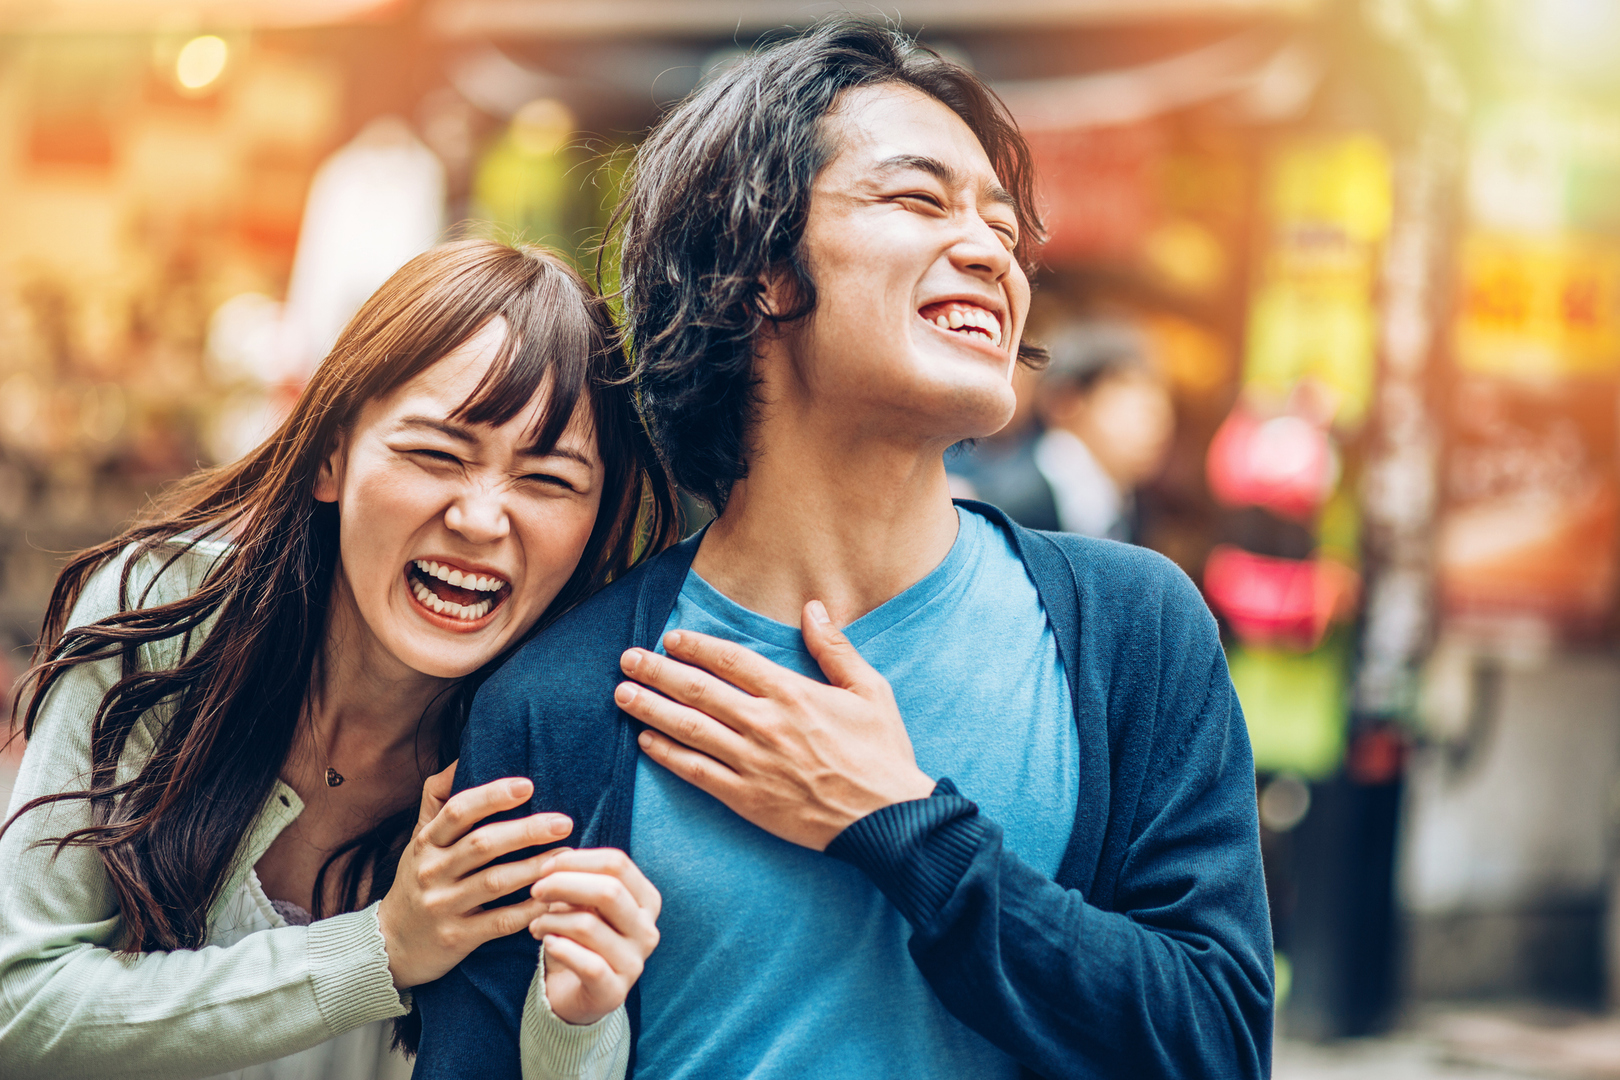 قانون مثير للجدل يجبر سكان محافظة يابانية على الضحك يوميا